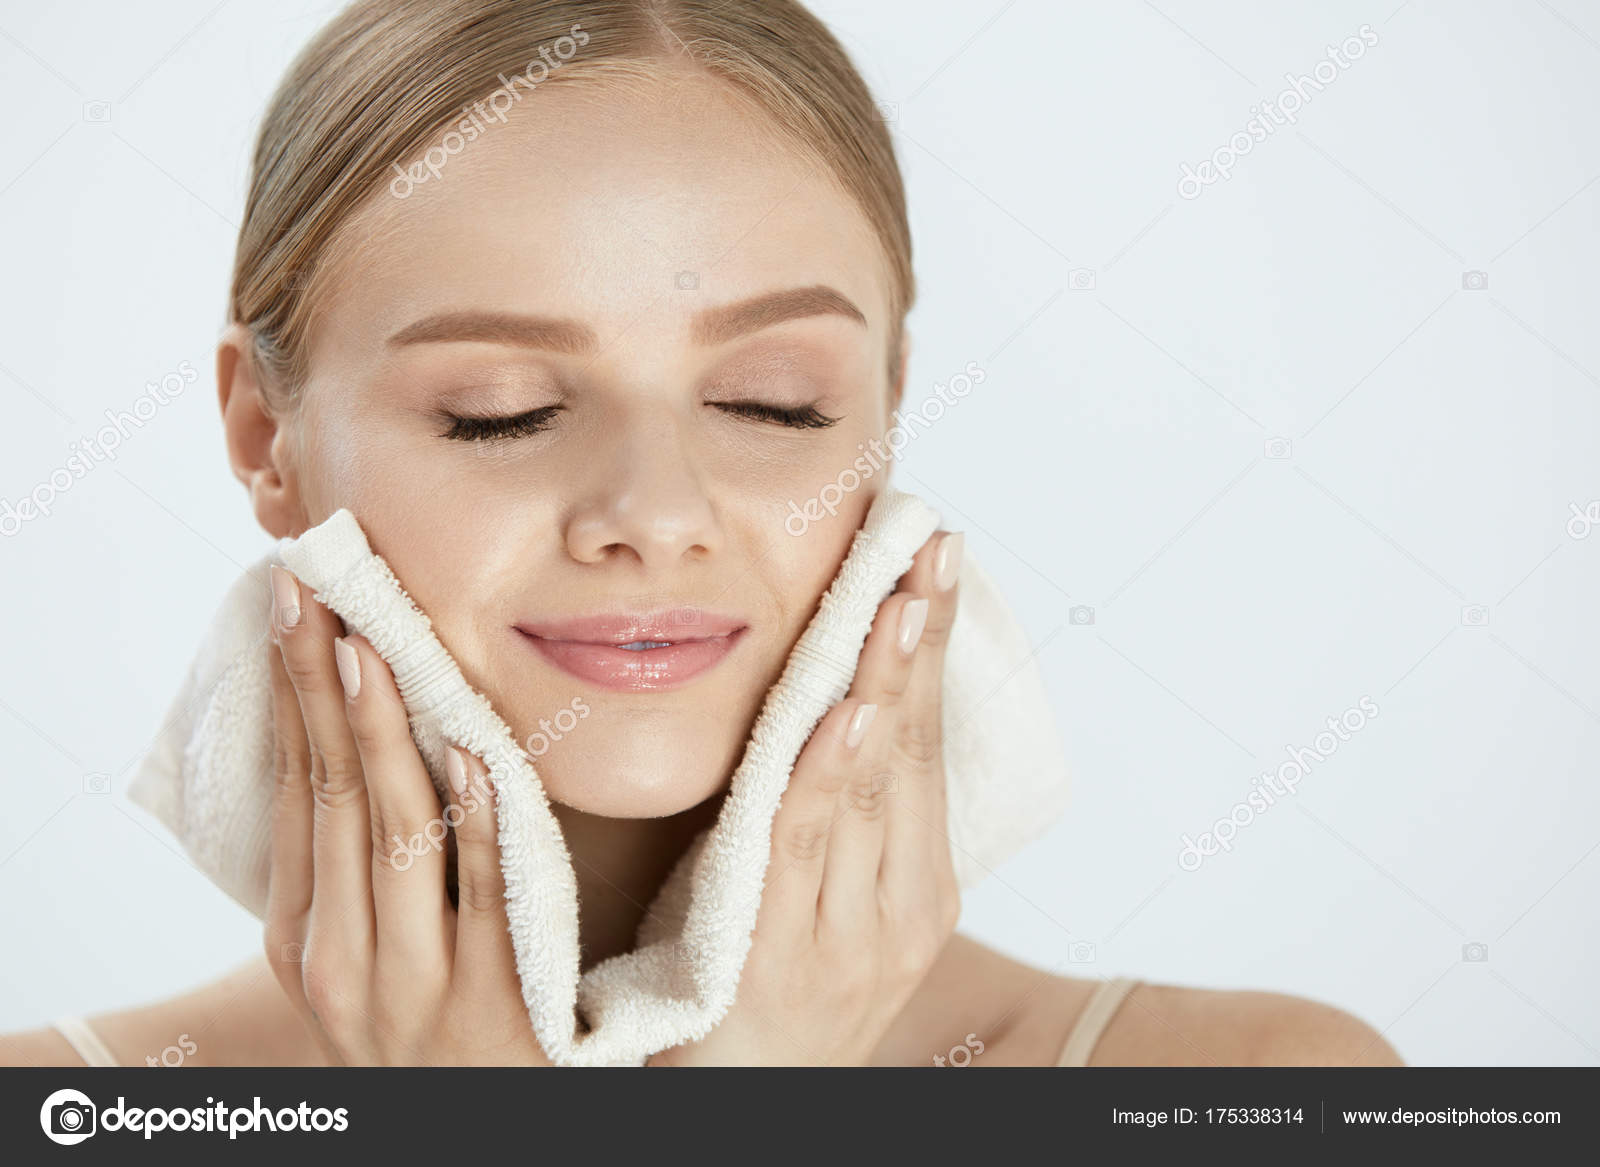 Limpieza de la piel facial, mujer joven sosteniendo una toalla cerca de la  piel facial después de lavarse la cara.